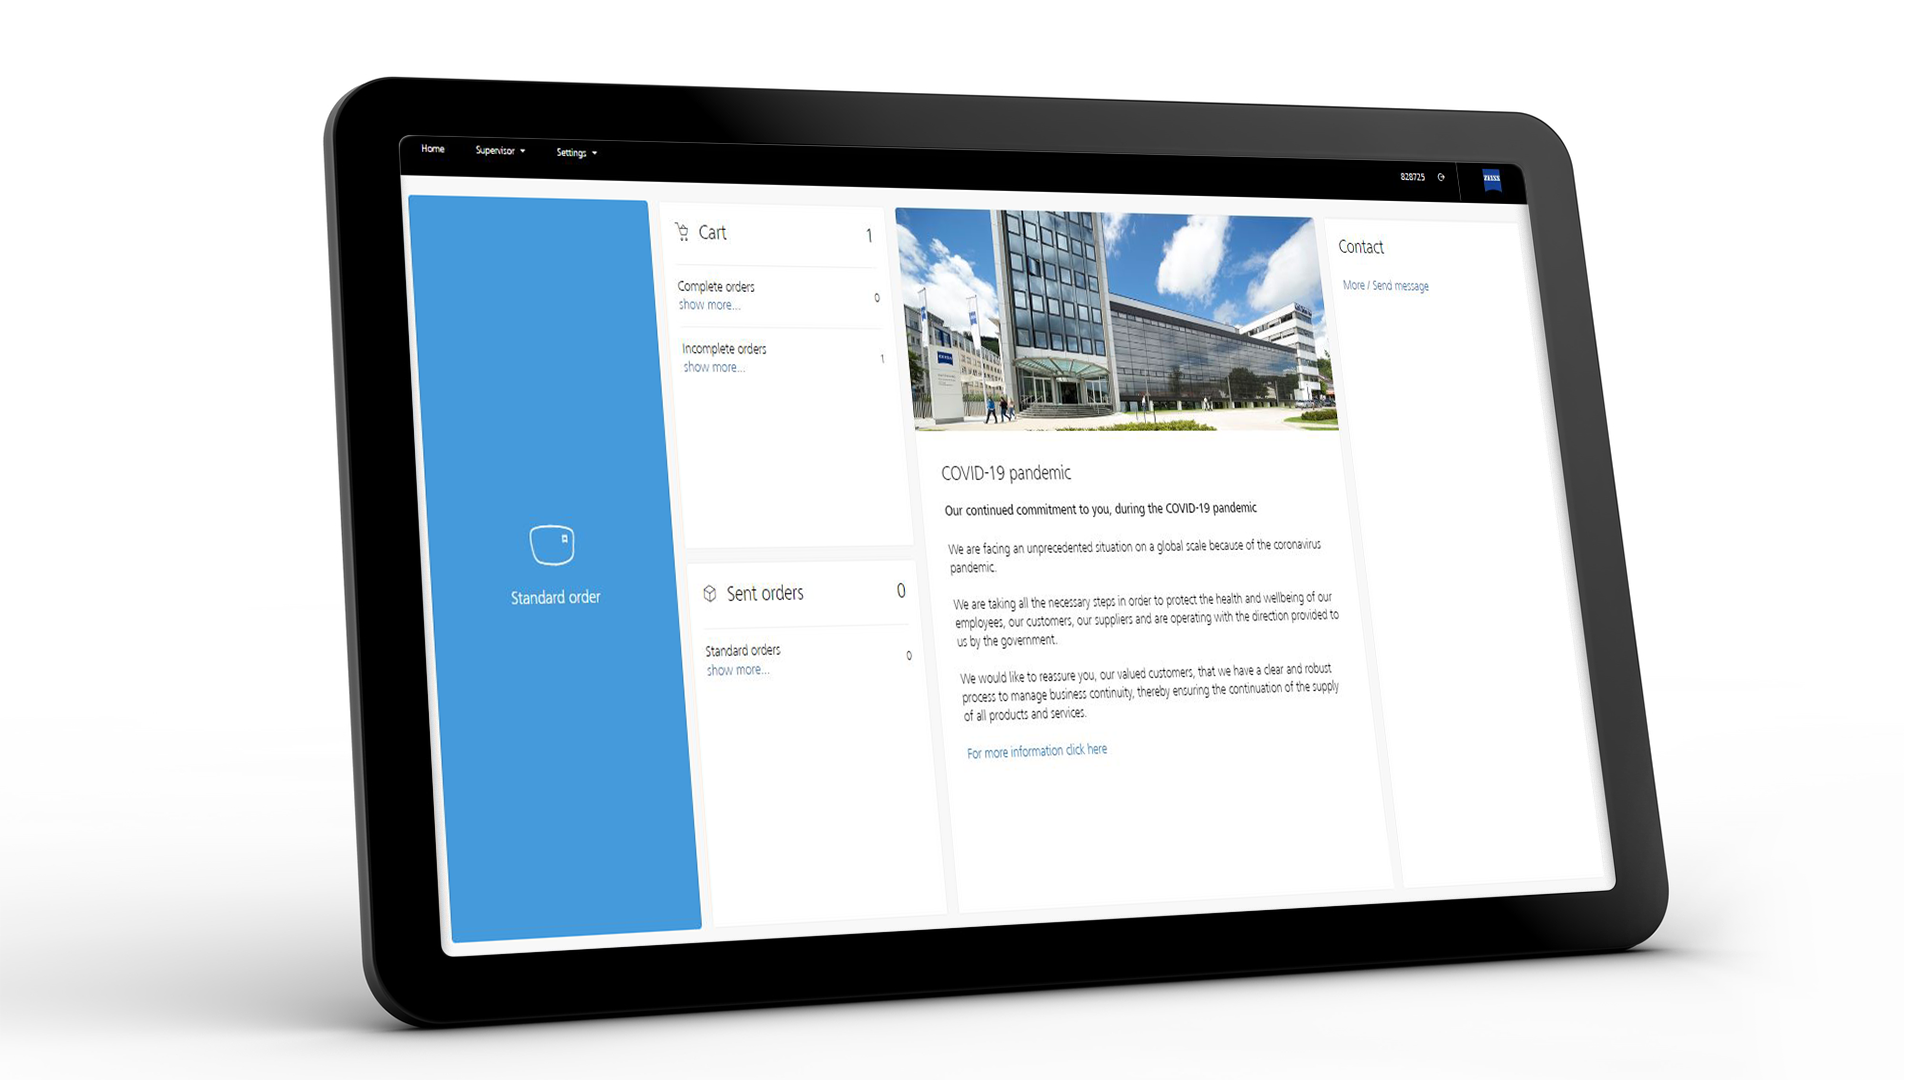 Obrazovka tabletu zobrazující rozhraní ZEISS VISUSTORE pro standardní objednávky 